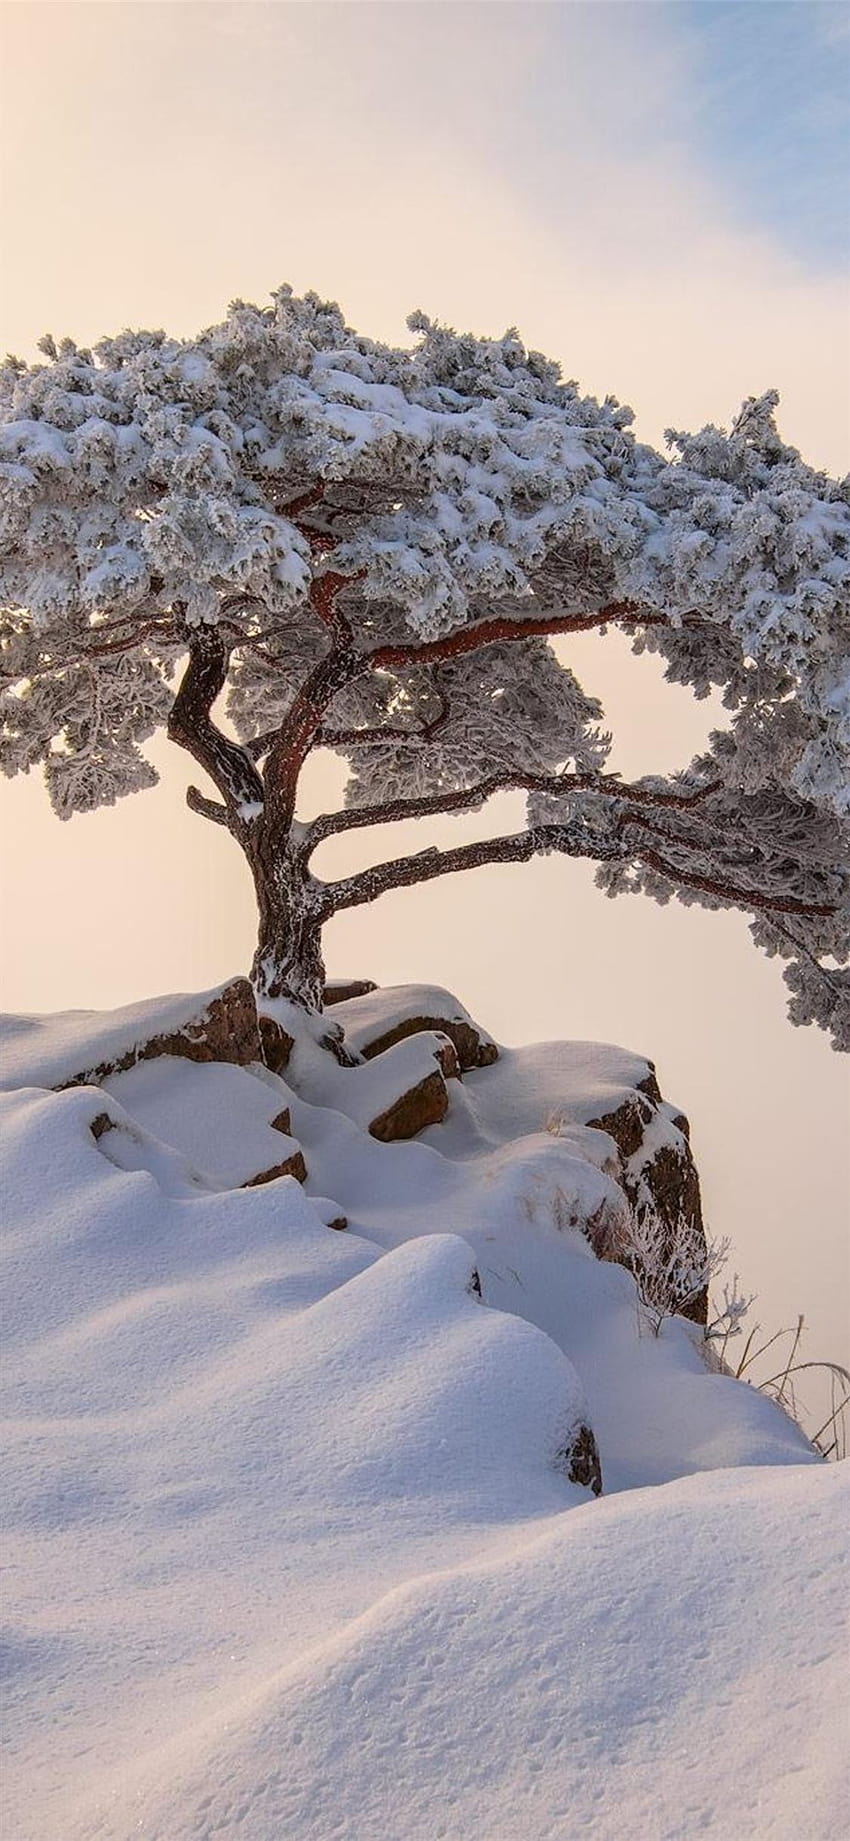 corea del sur diciembre invierno iPhone X, estética coreana de invierno fondo de pantalla del teléfono